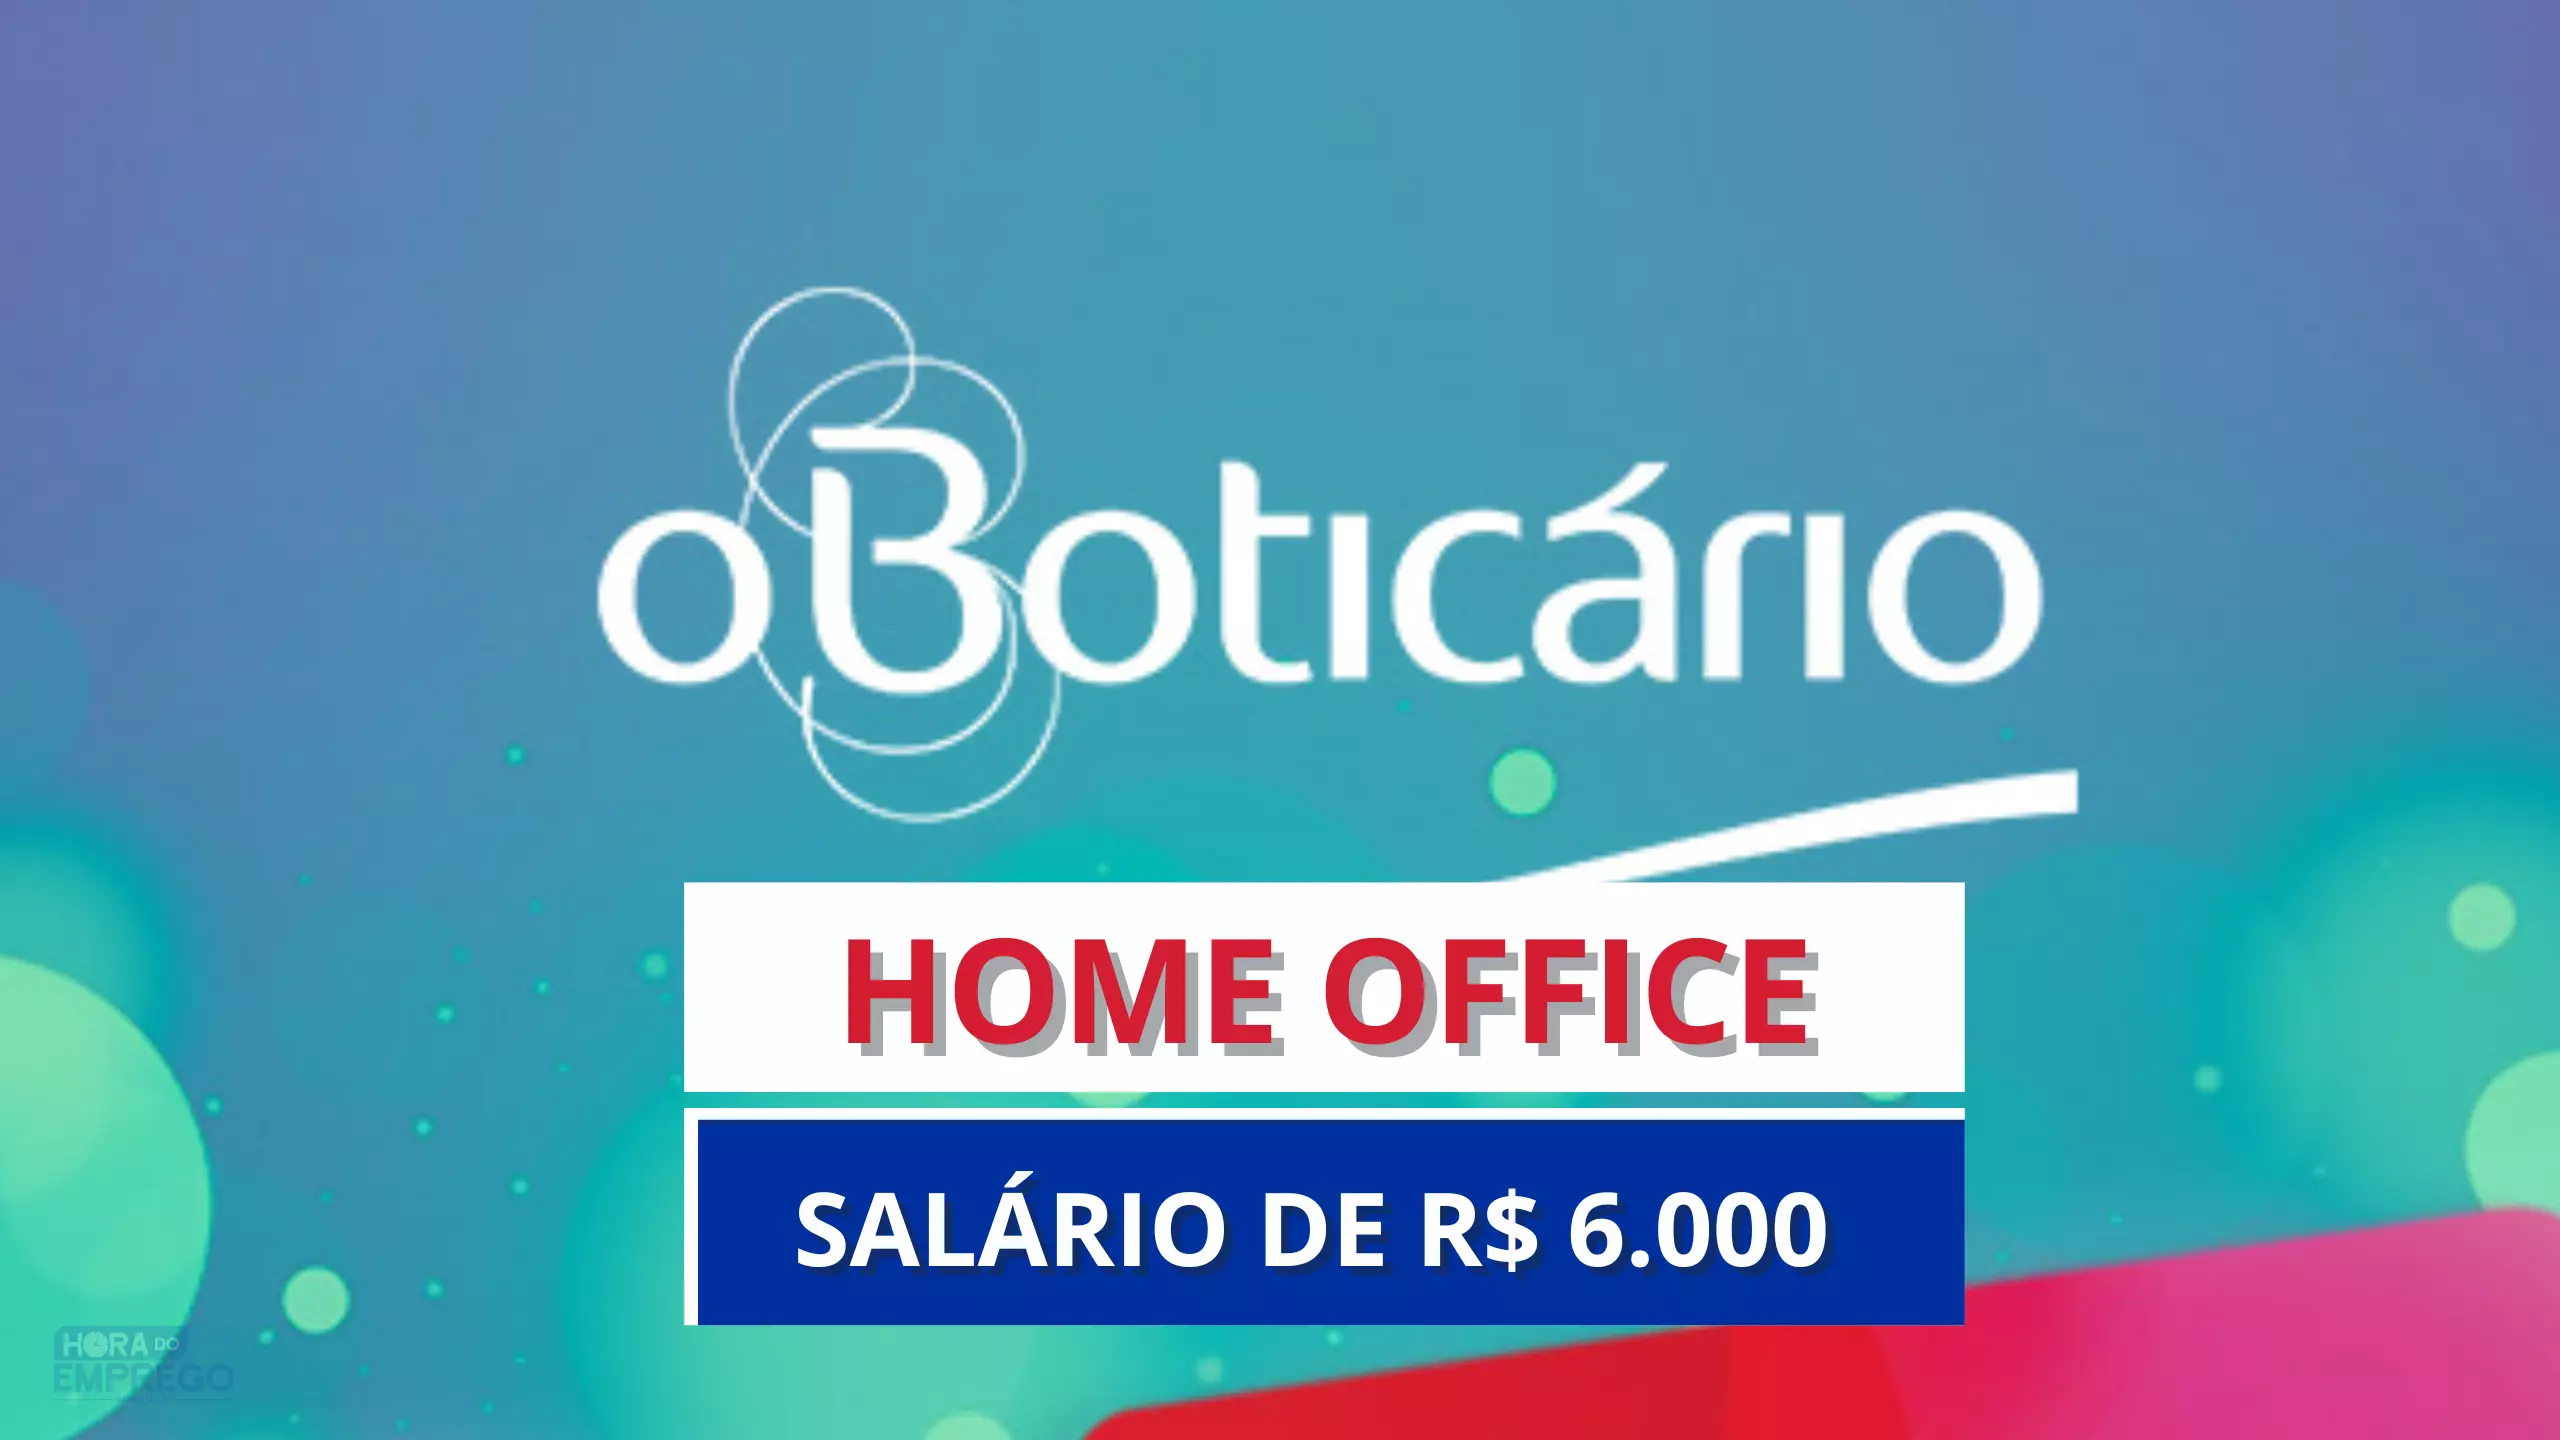 Grupo Boticário abre vaga 100% HOME OFFICE com salário de R$ 6.000 com Auxílio Babá ou Auxílio Creche